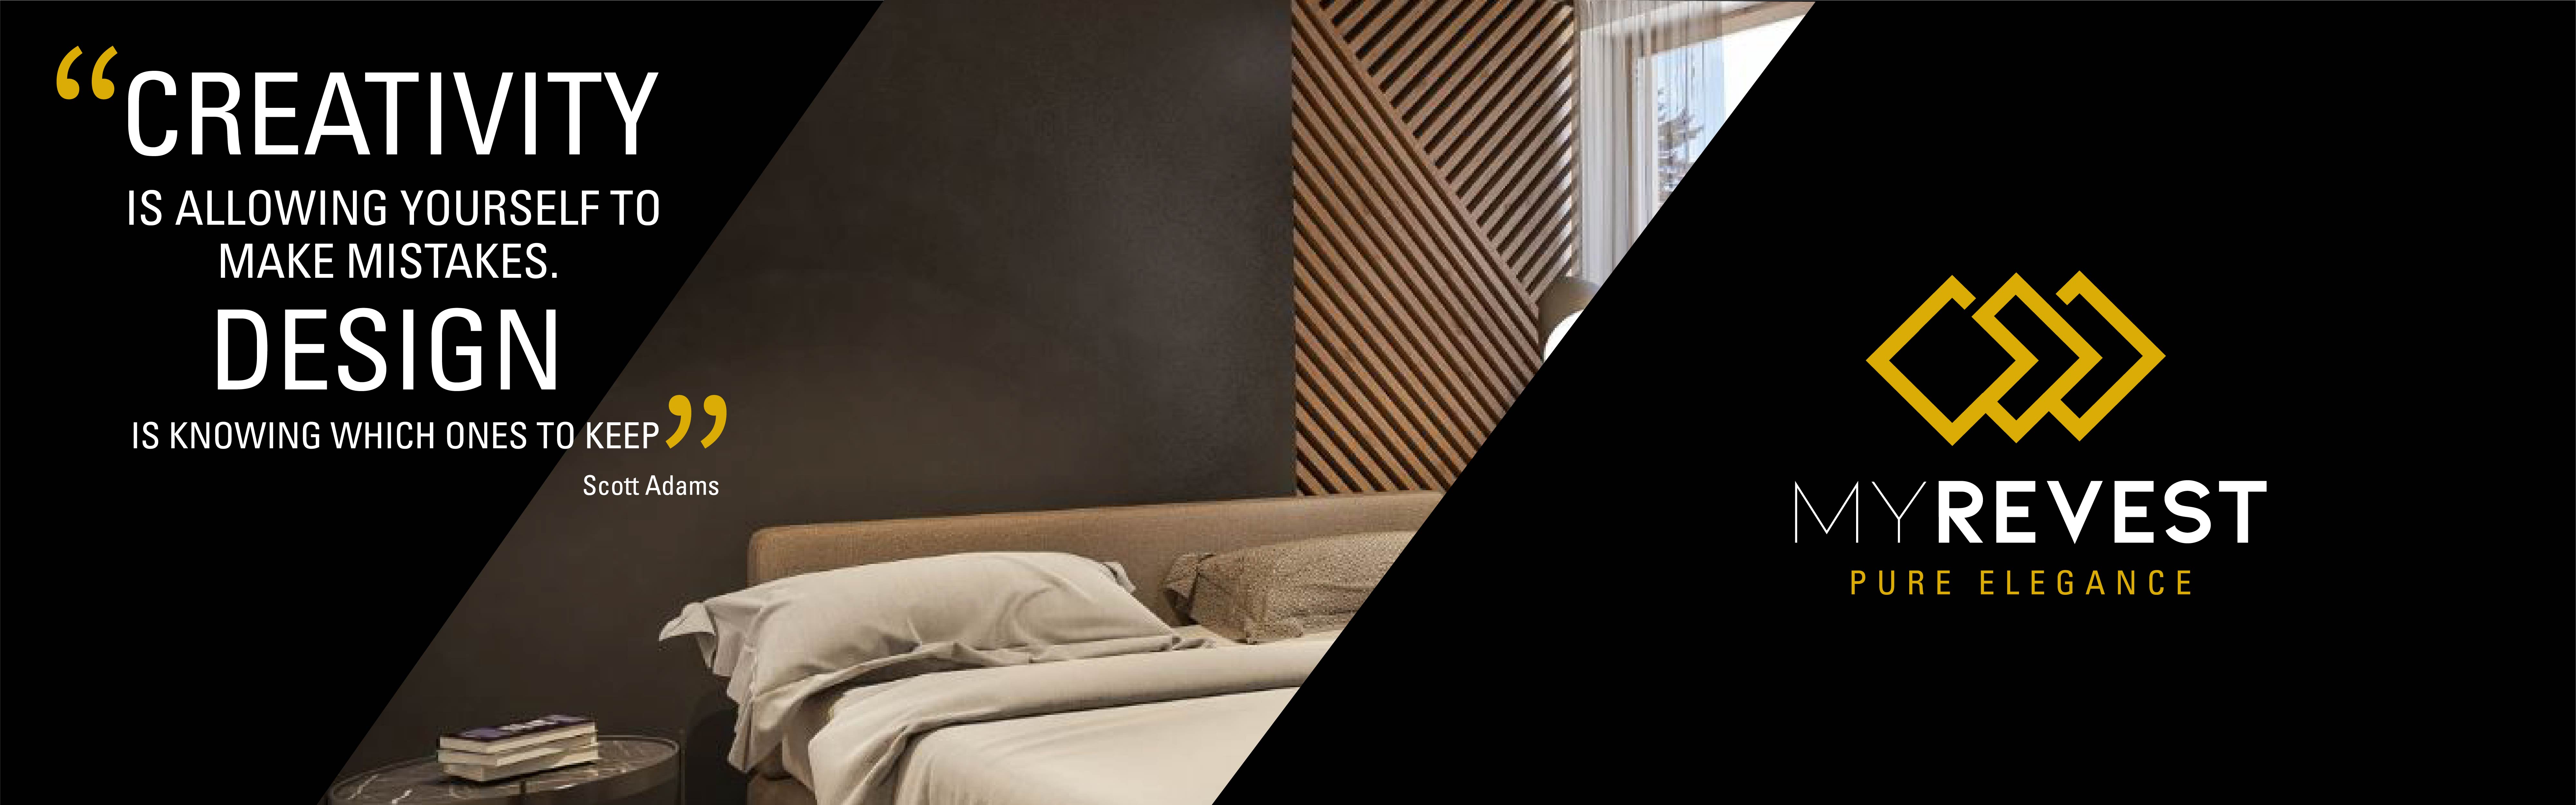 Lớp phủ bằng xi măng vi mô trên bức tường của một phòng ngủ theo phong cách tối giản bên cạnh logo của MyRevest